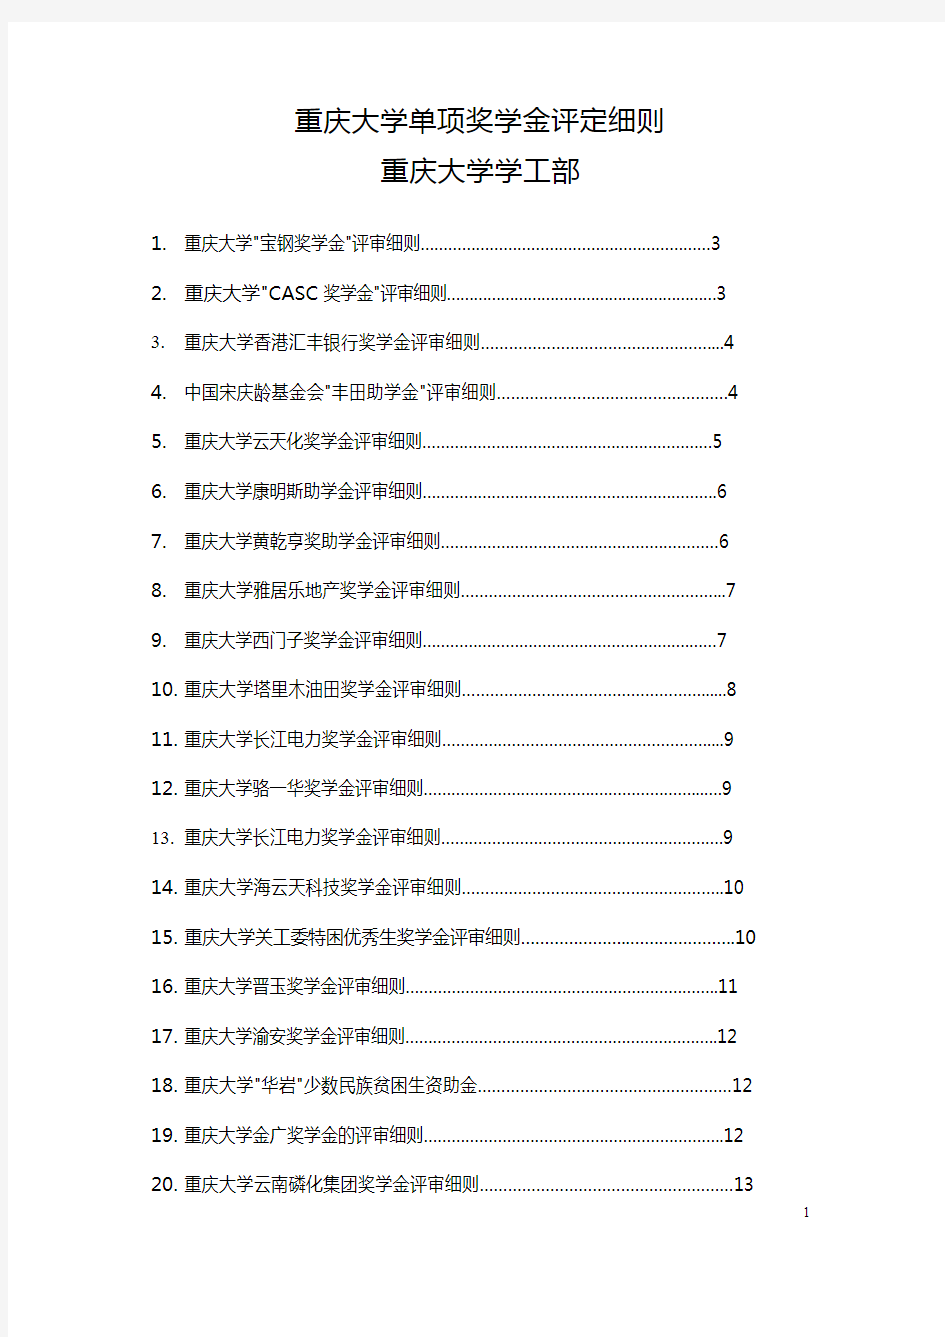 重庆大学单项奖学金评定细则